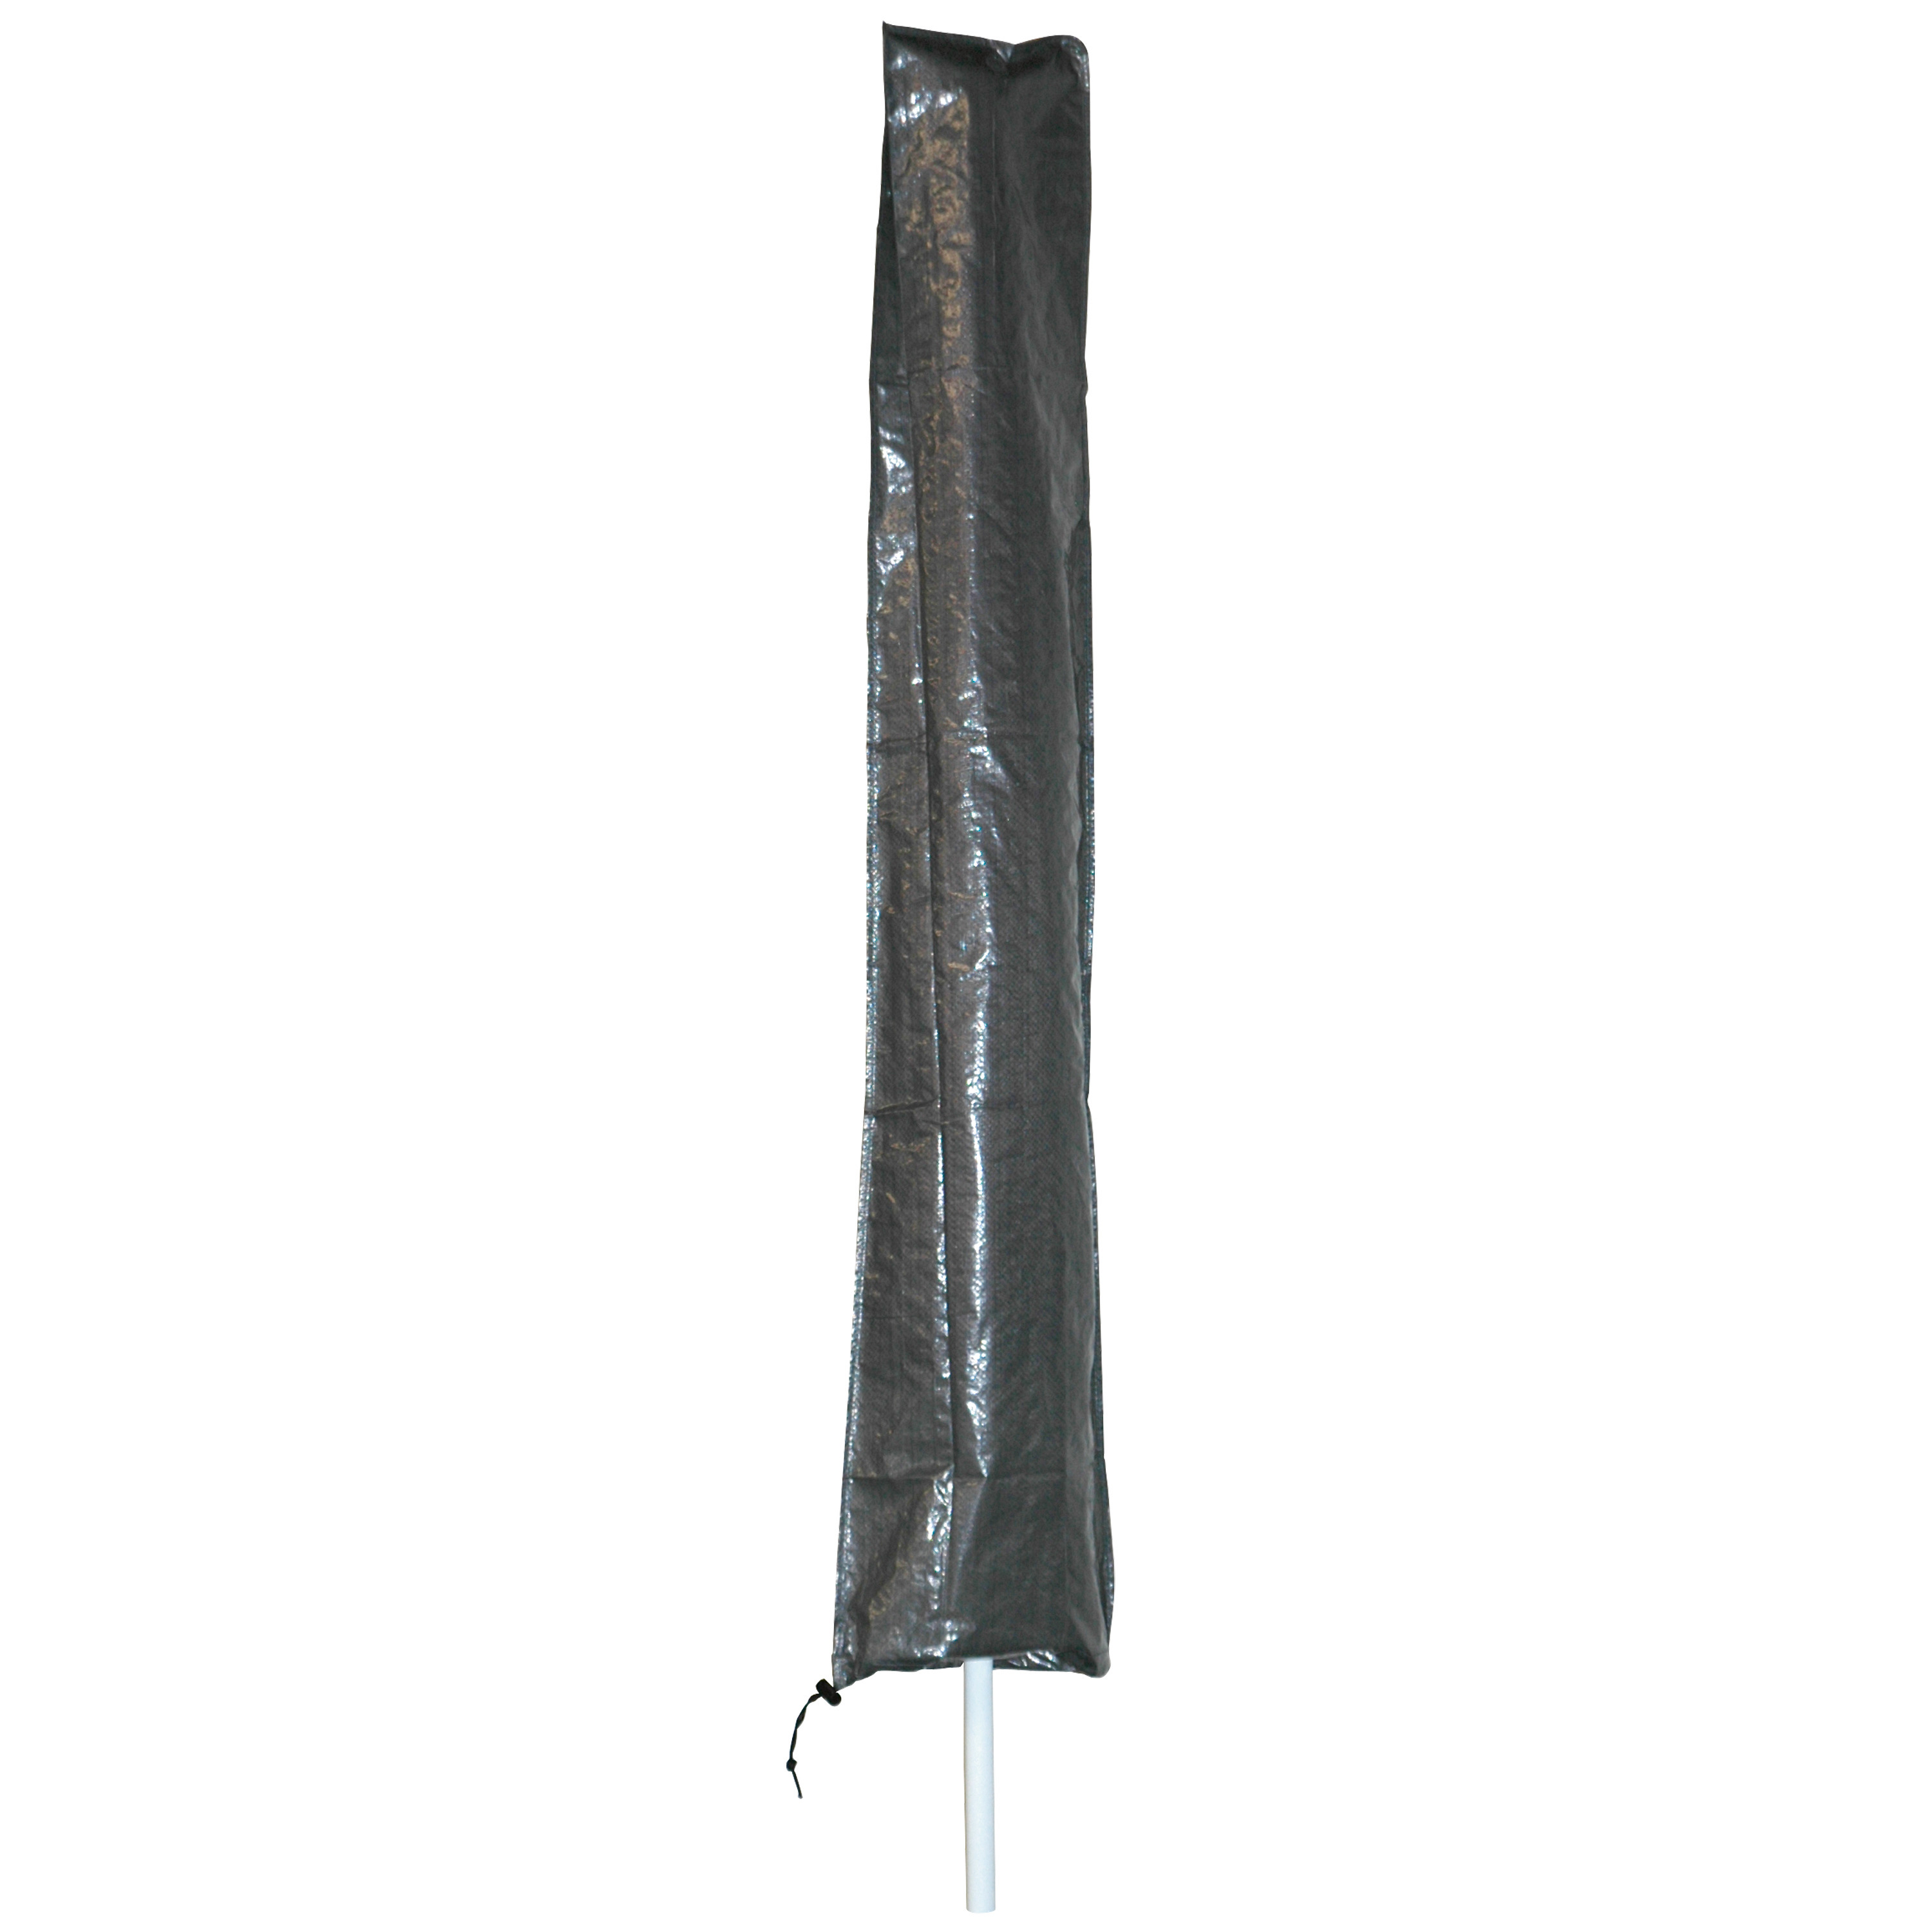 Afdekhoes-beschermhoes grijs voor parasols met een diameter van 4 m inclusief stok